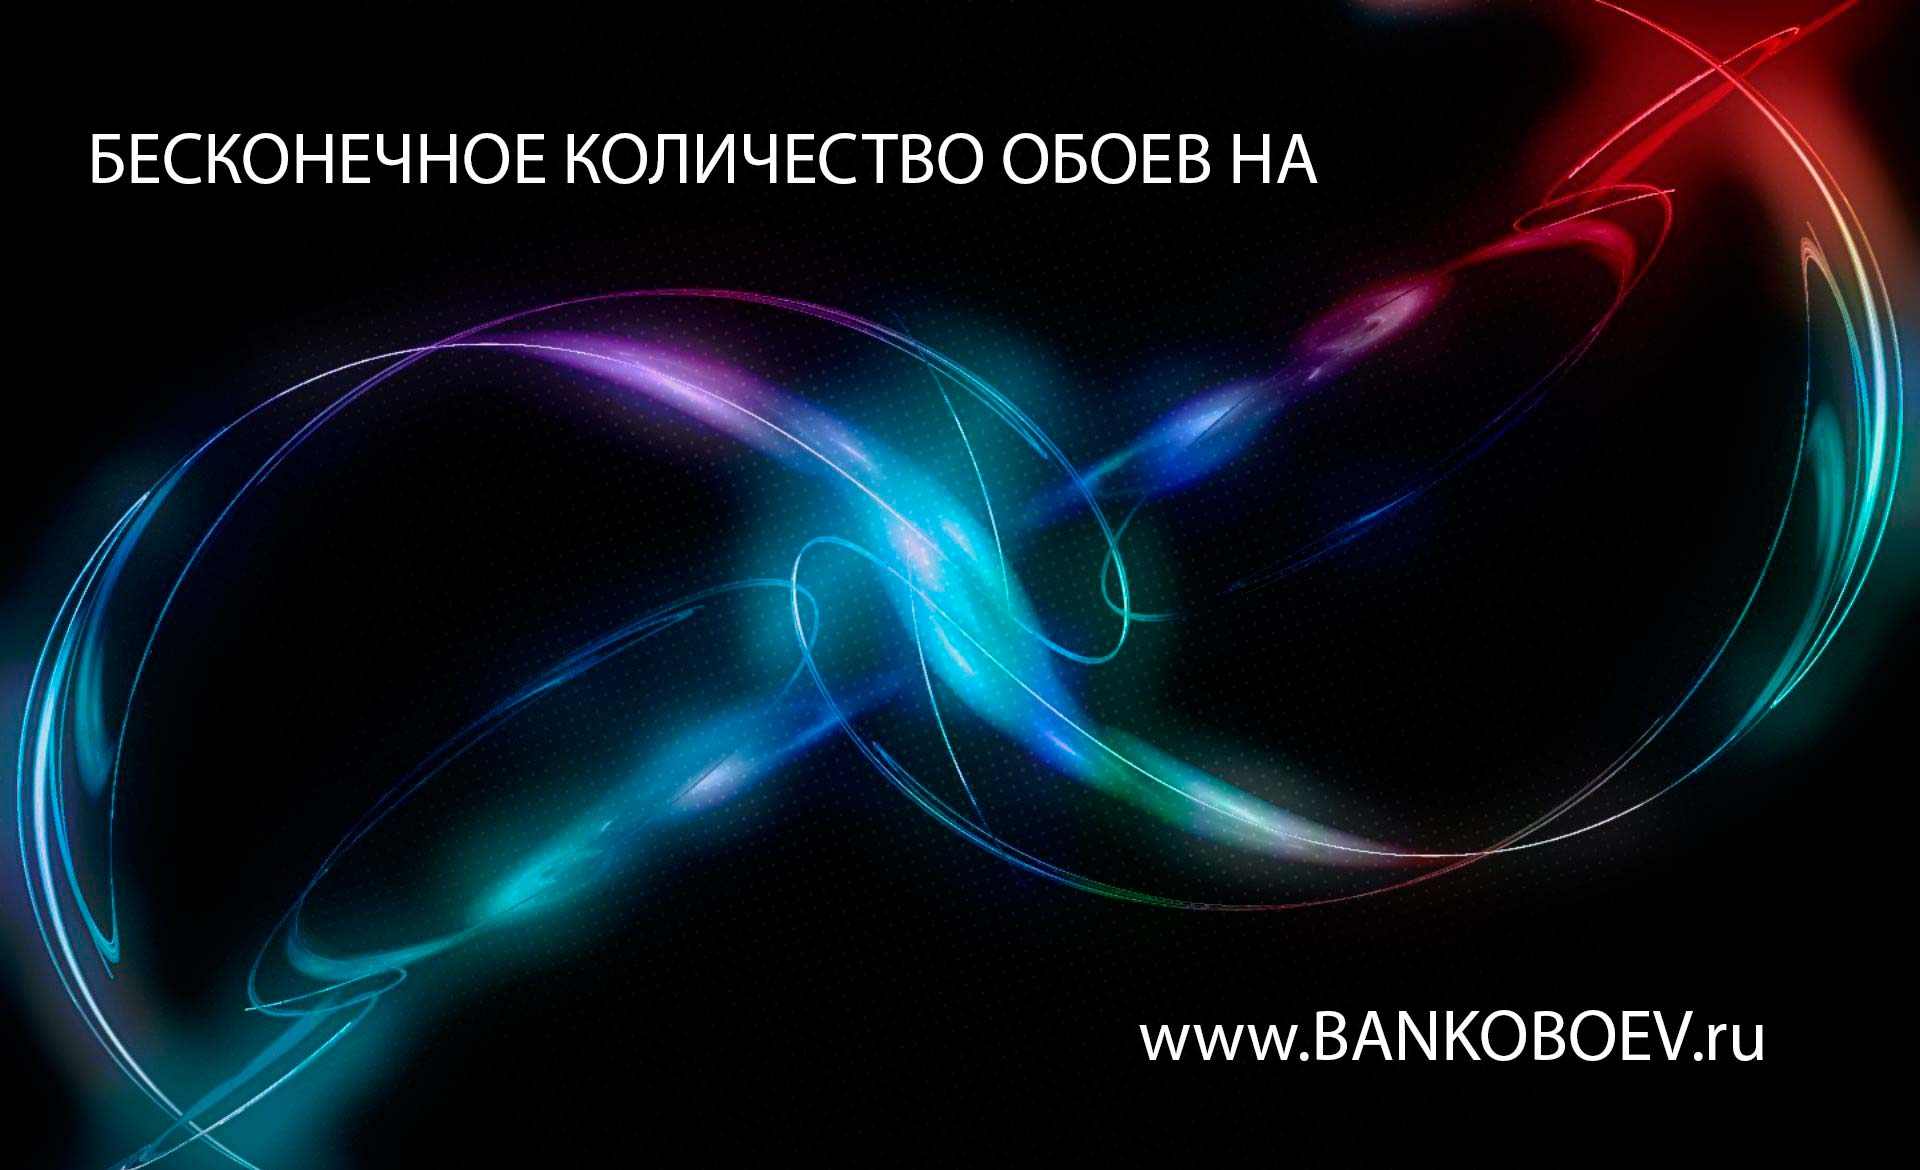 Bankoboev Ru Image Mtuwndm4 Jpg